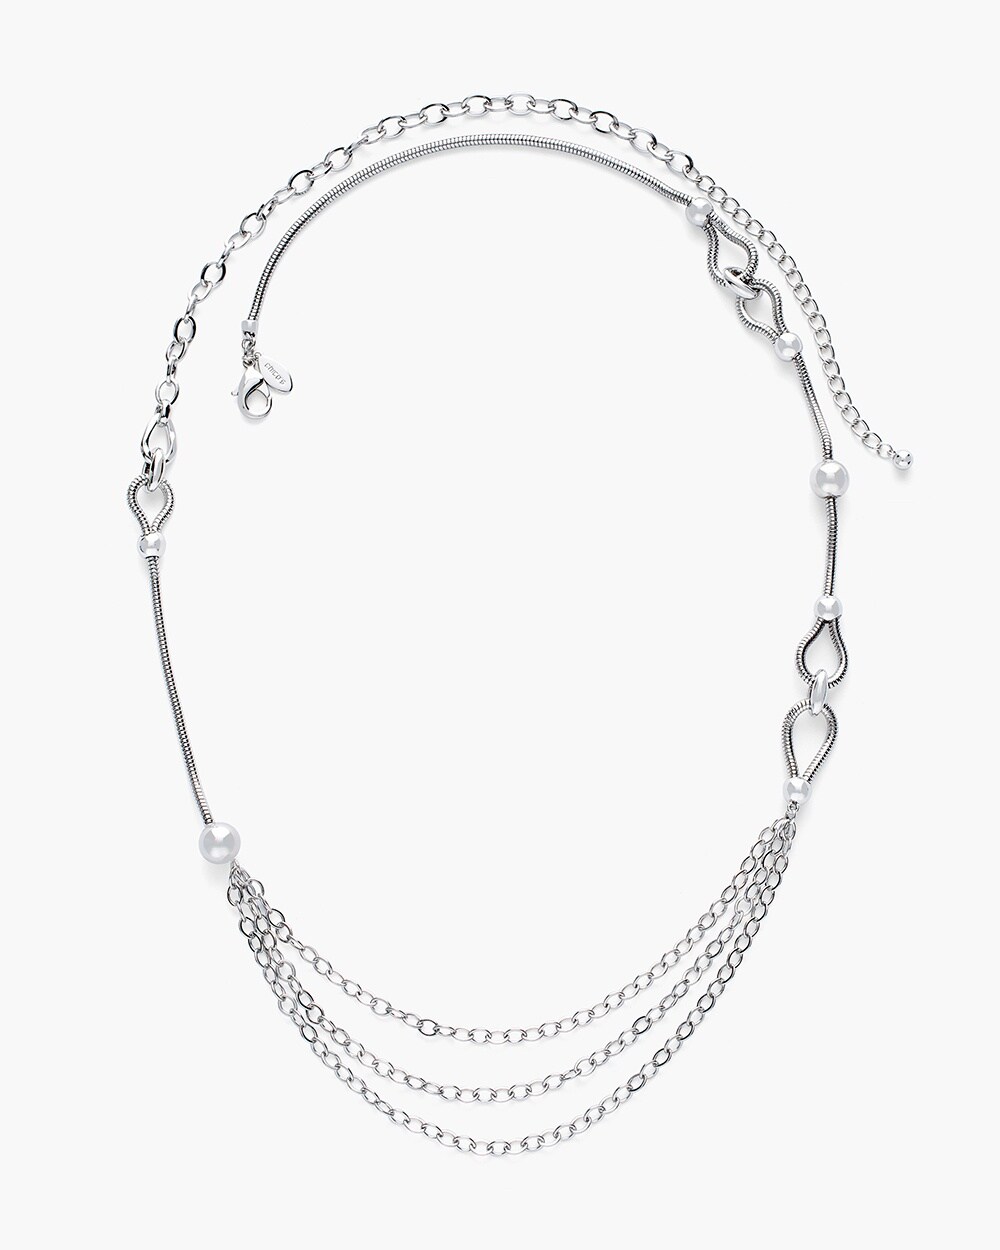 Silver-Tone Chain Necklace